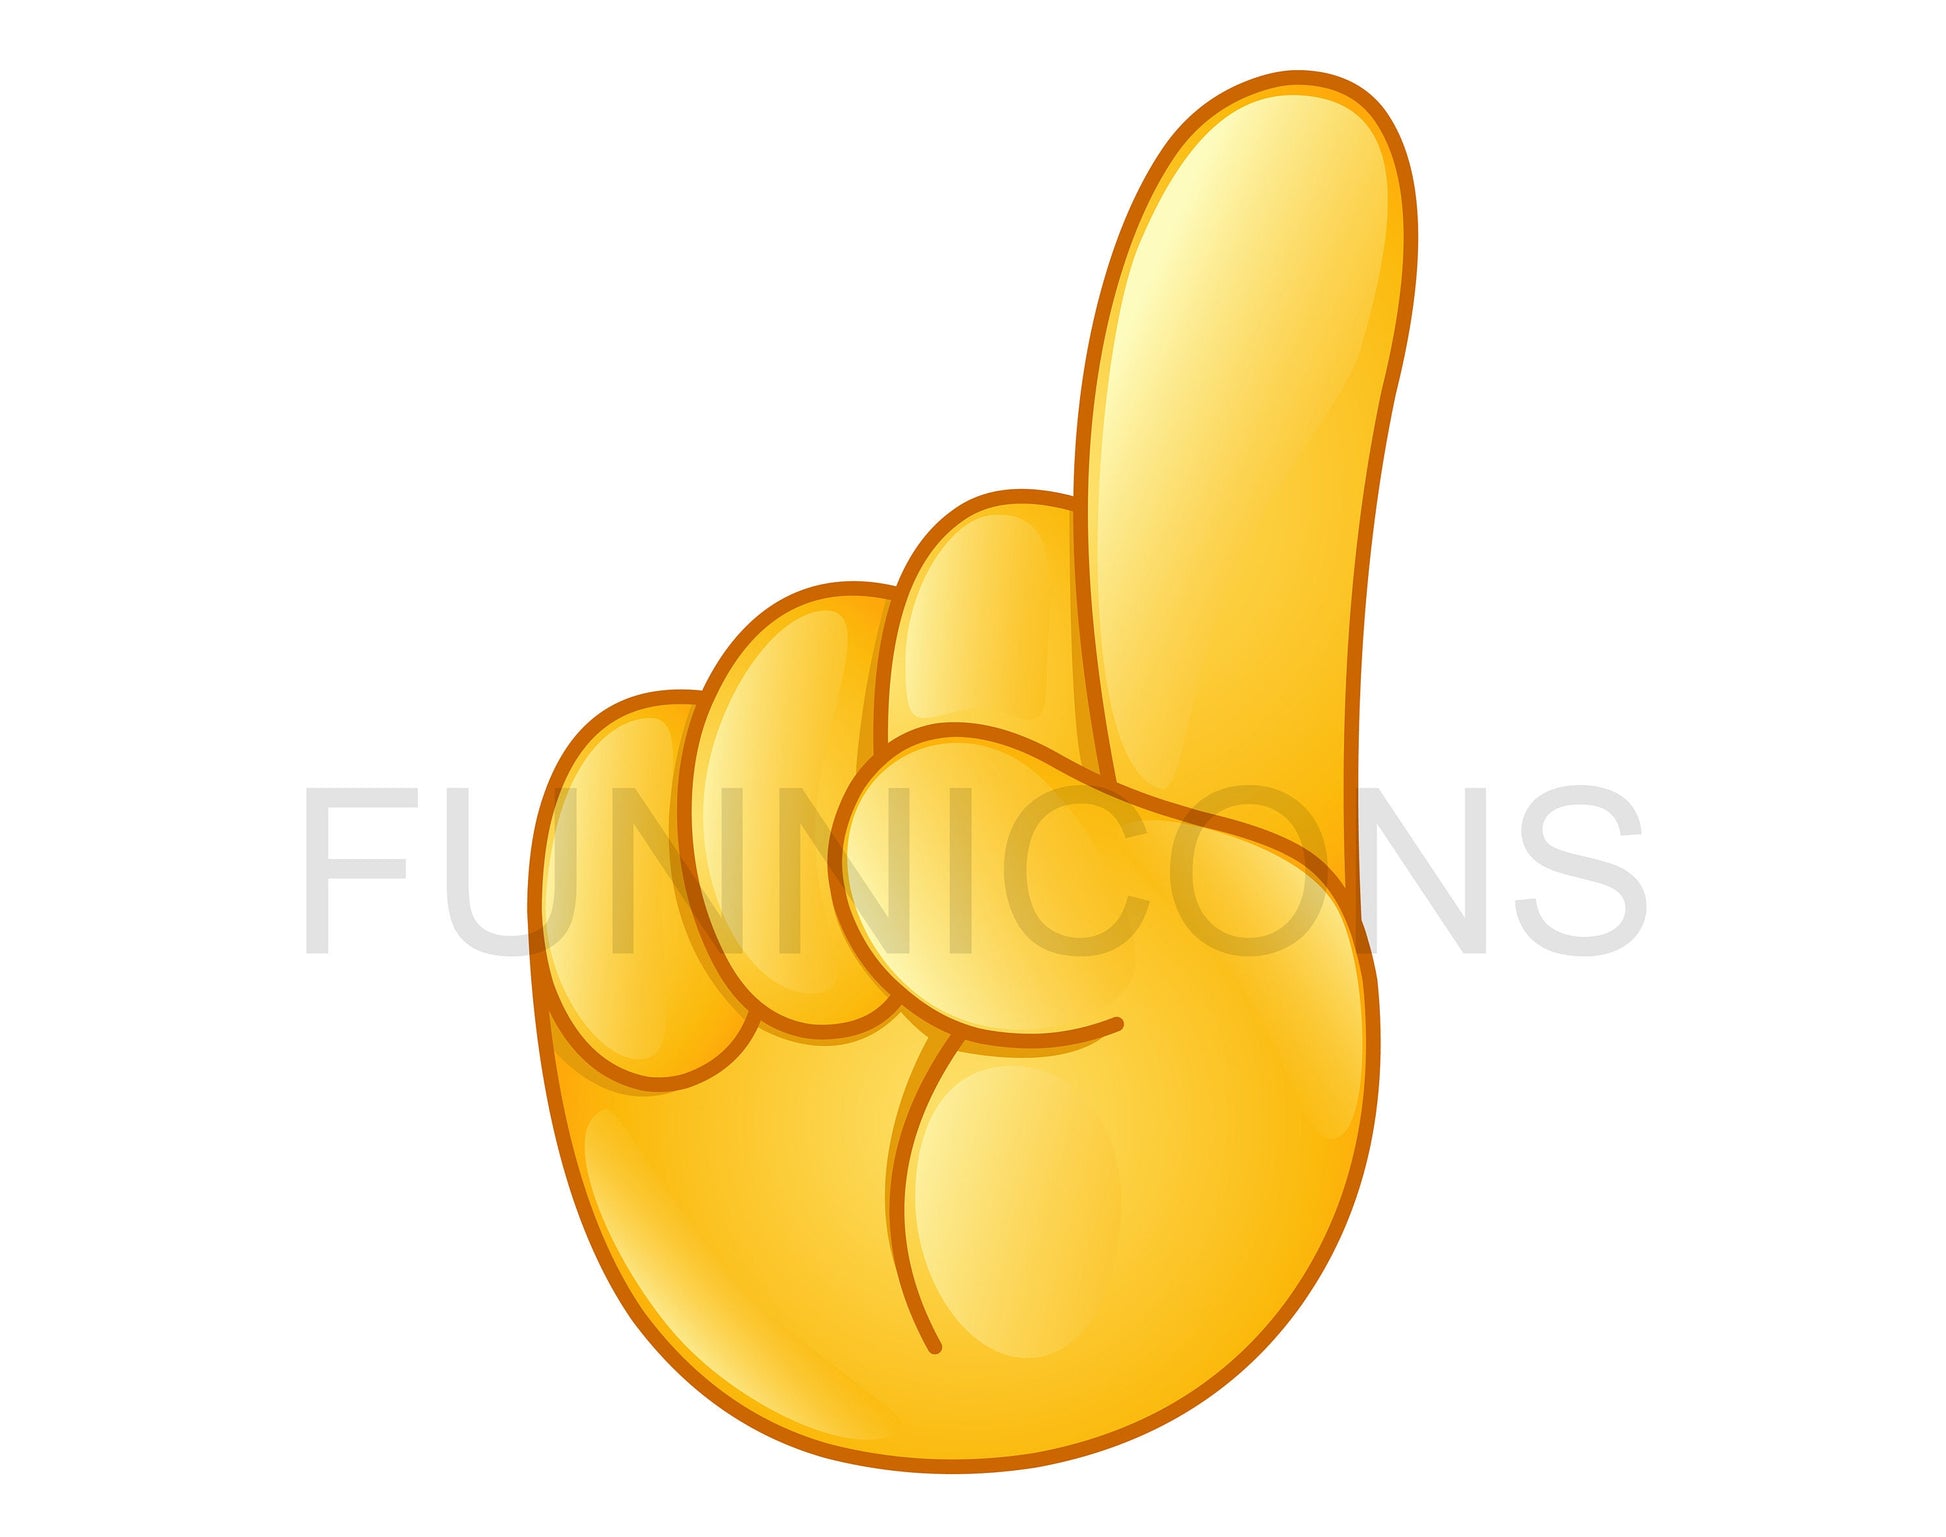 finger pointing up emoji